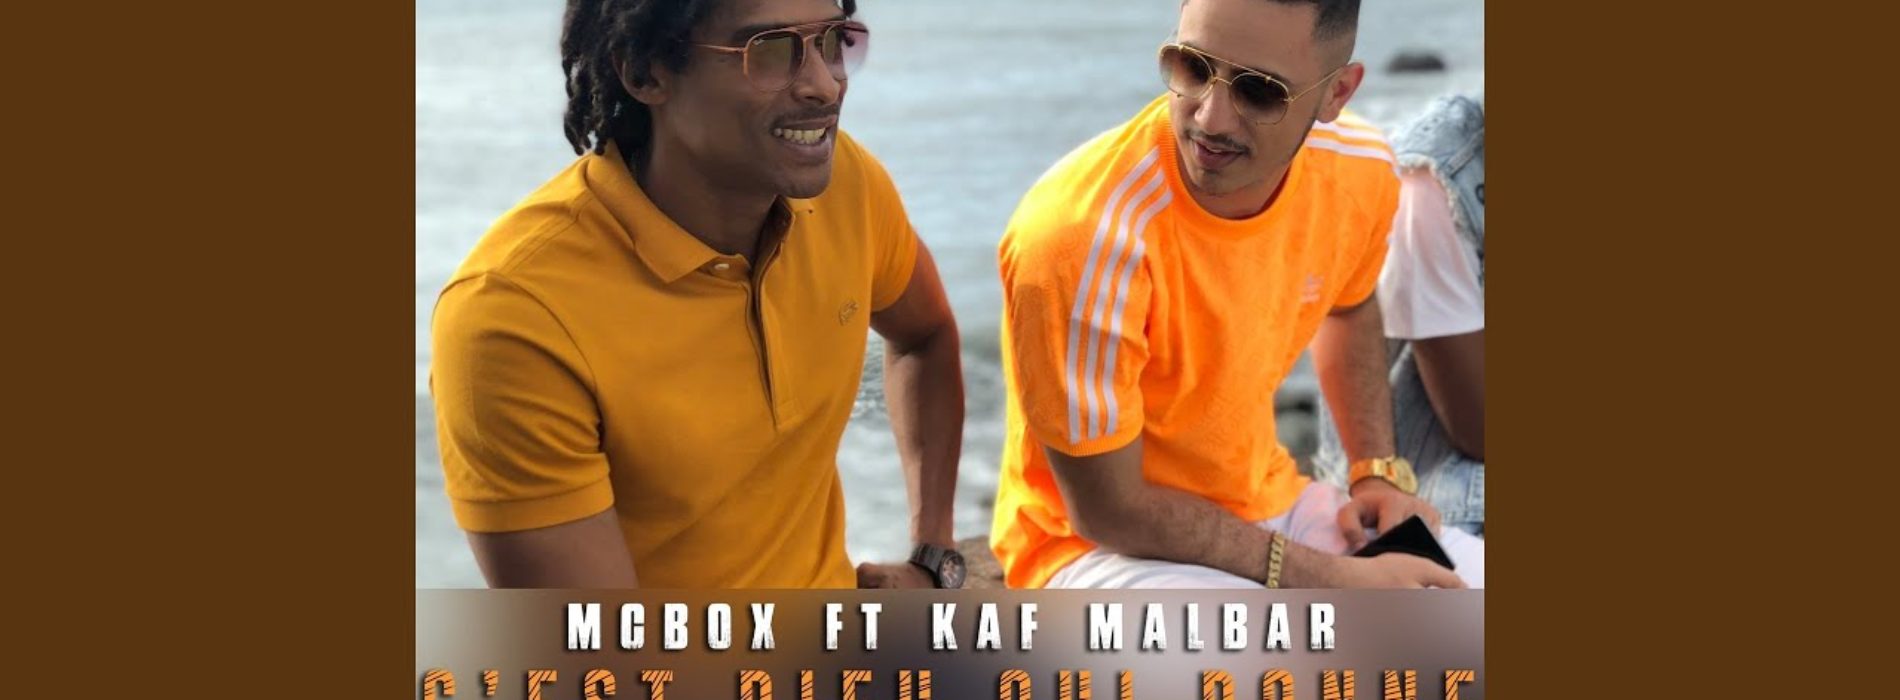 MCBOX feat KAF MALBAR – C’est dieu qui donne  – Septembre 2019